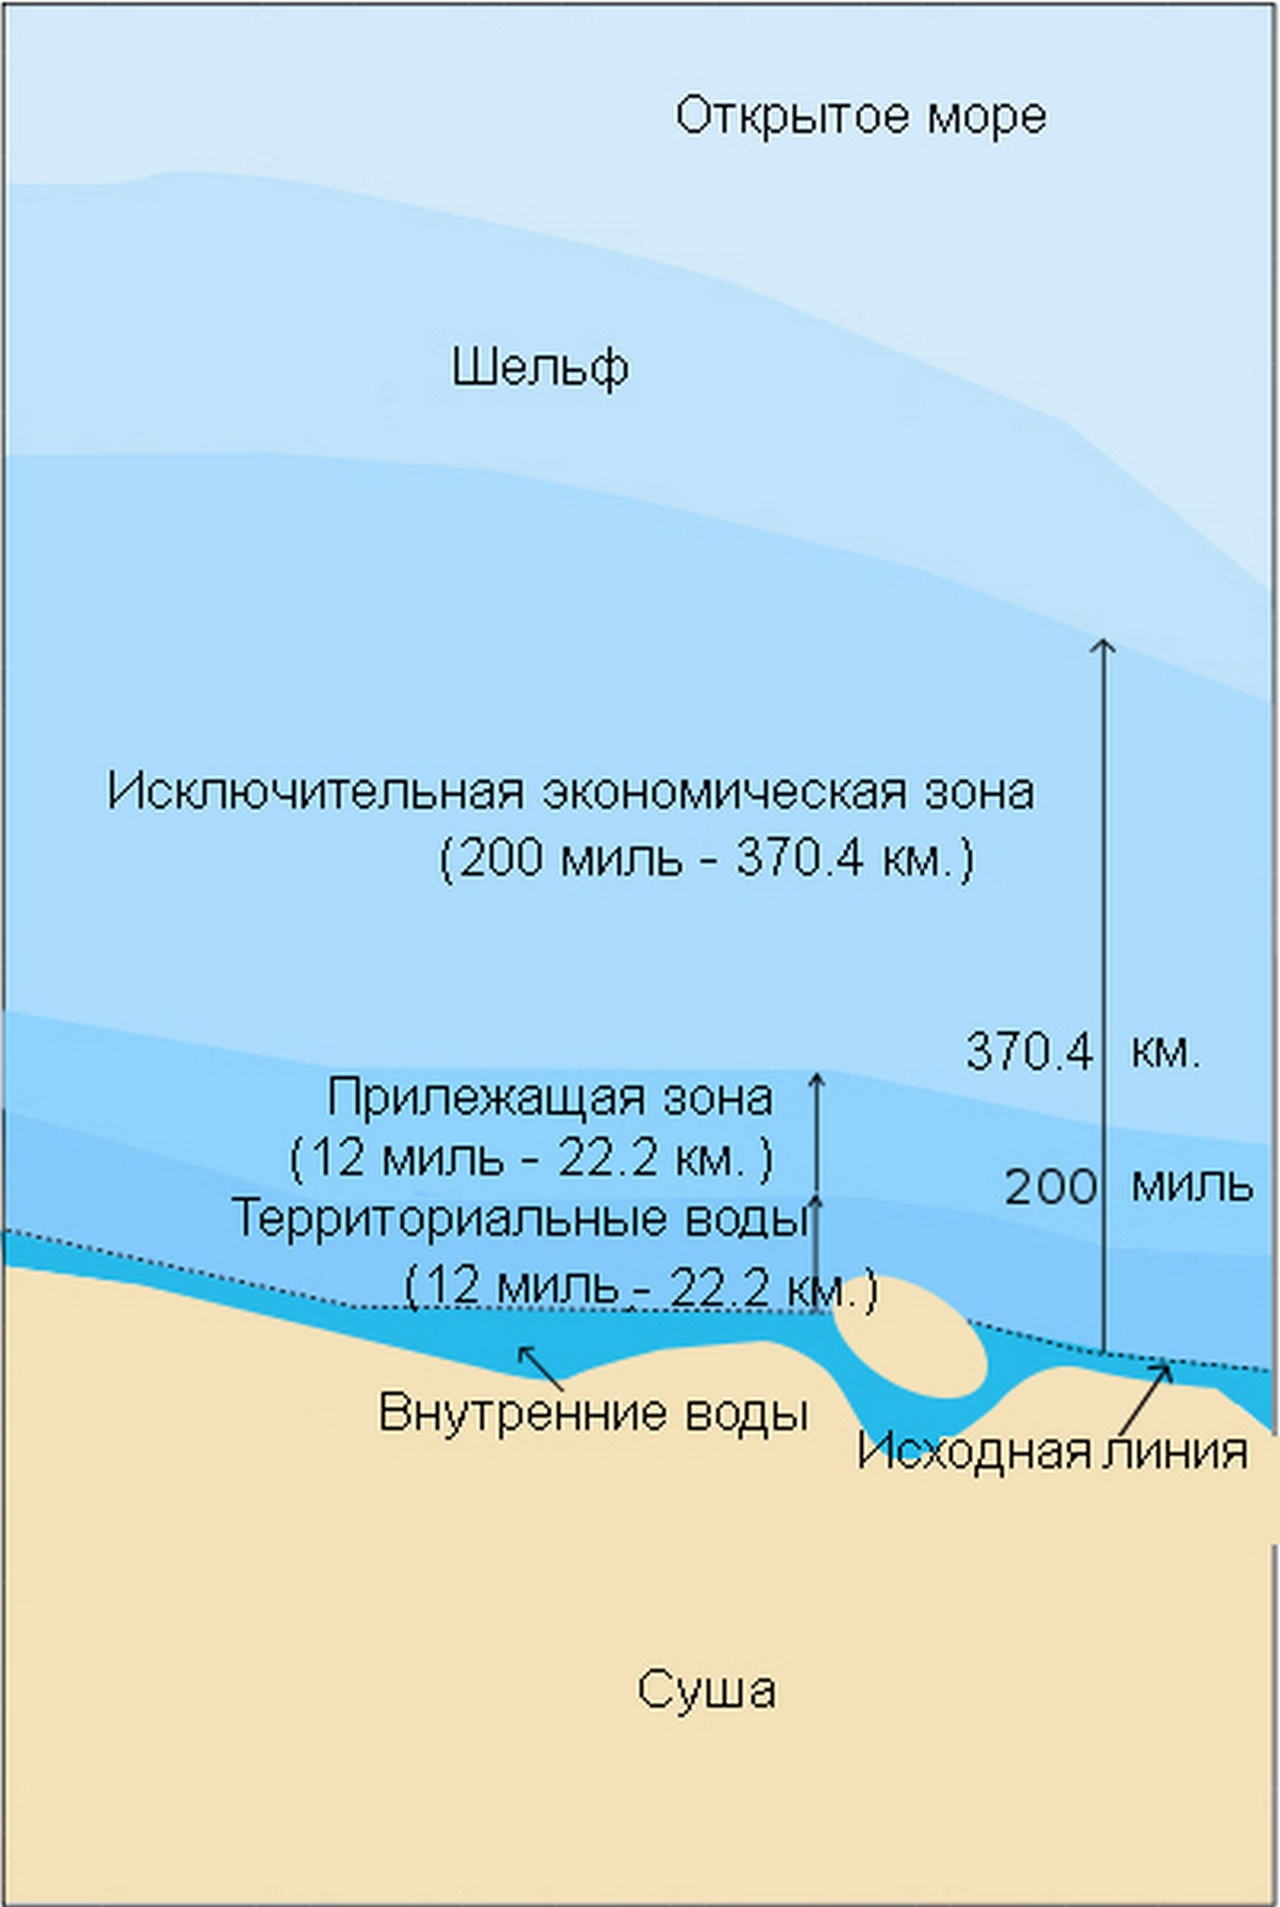 Морские зоны в соответствии с Конвенцией 1982 г.